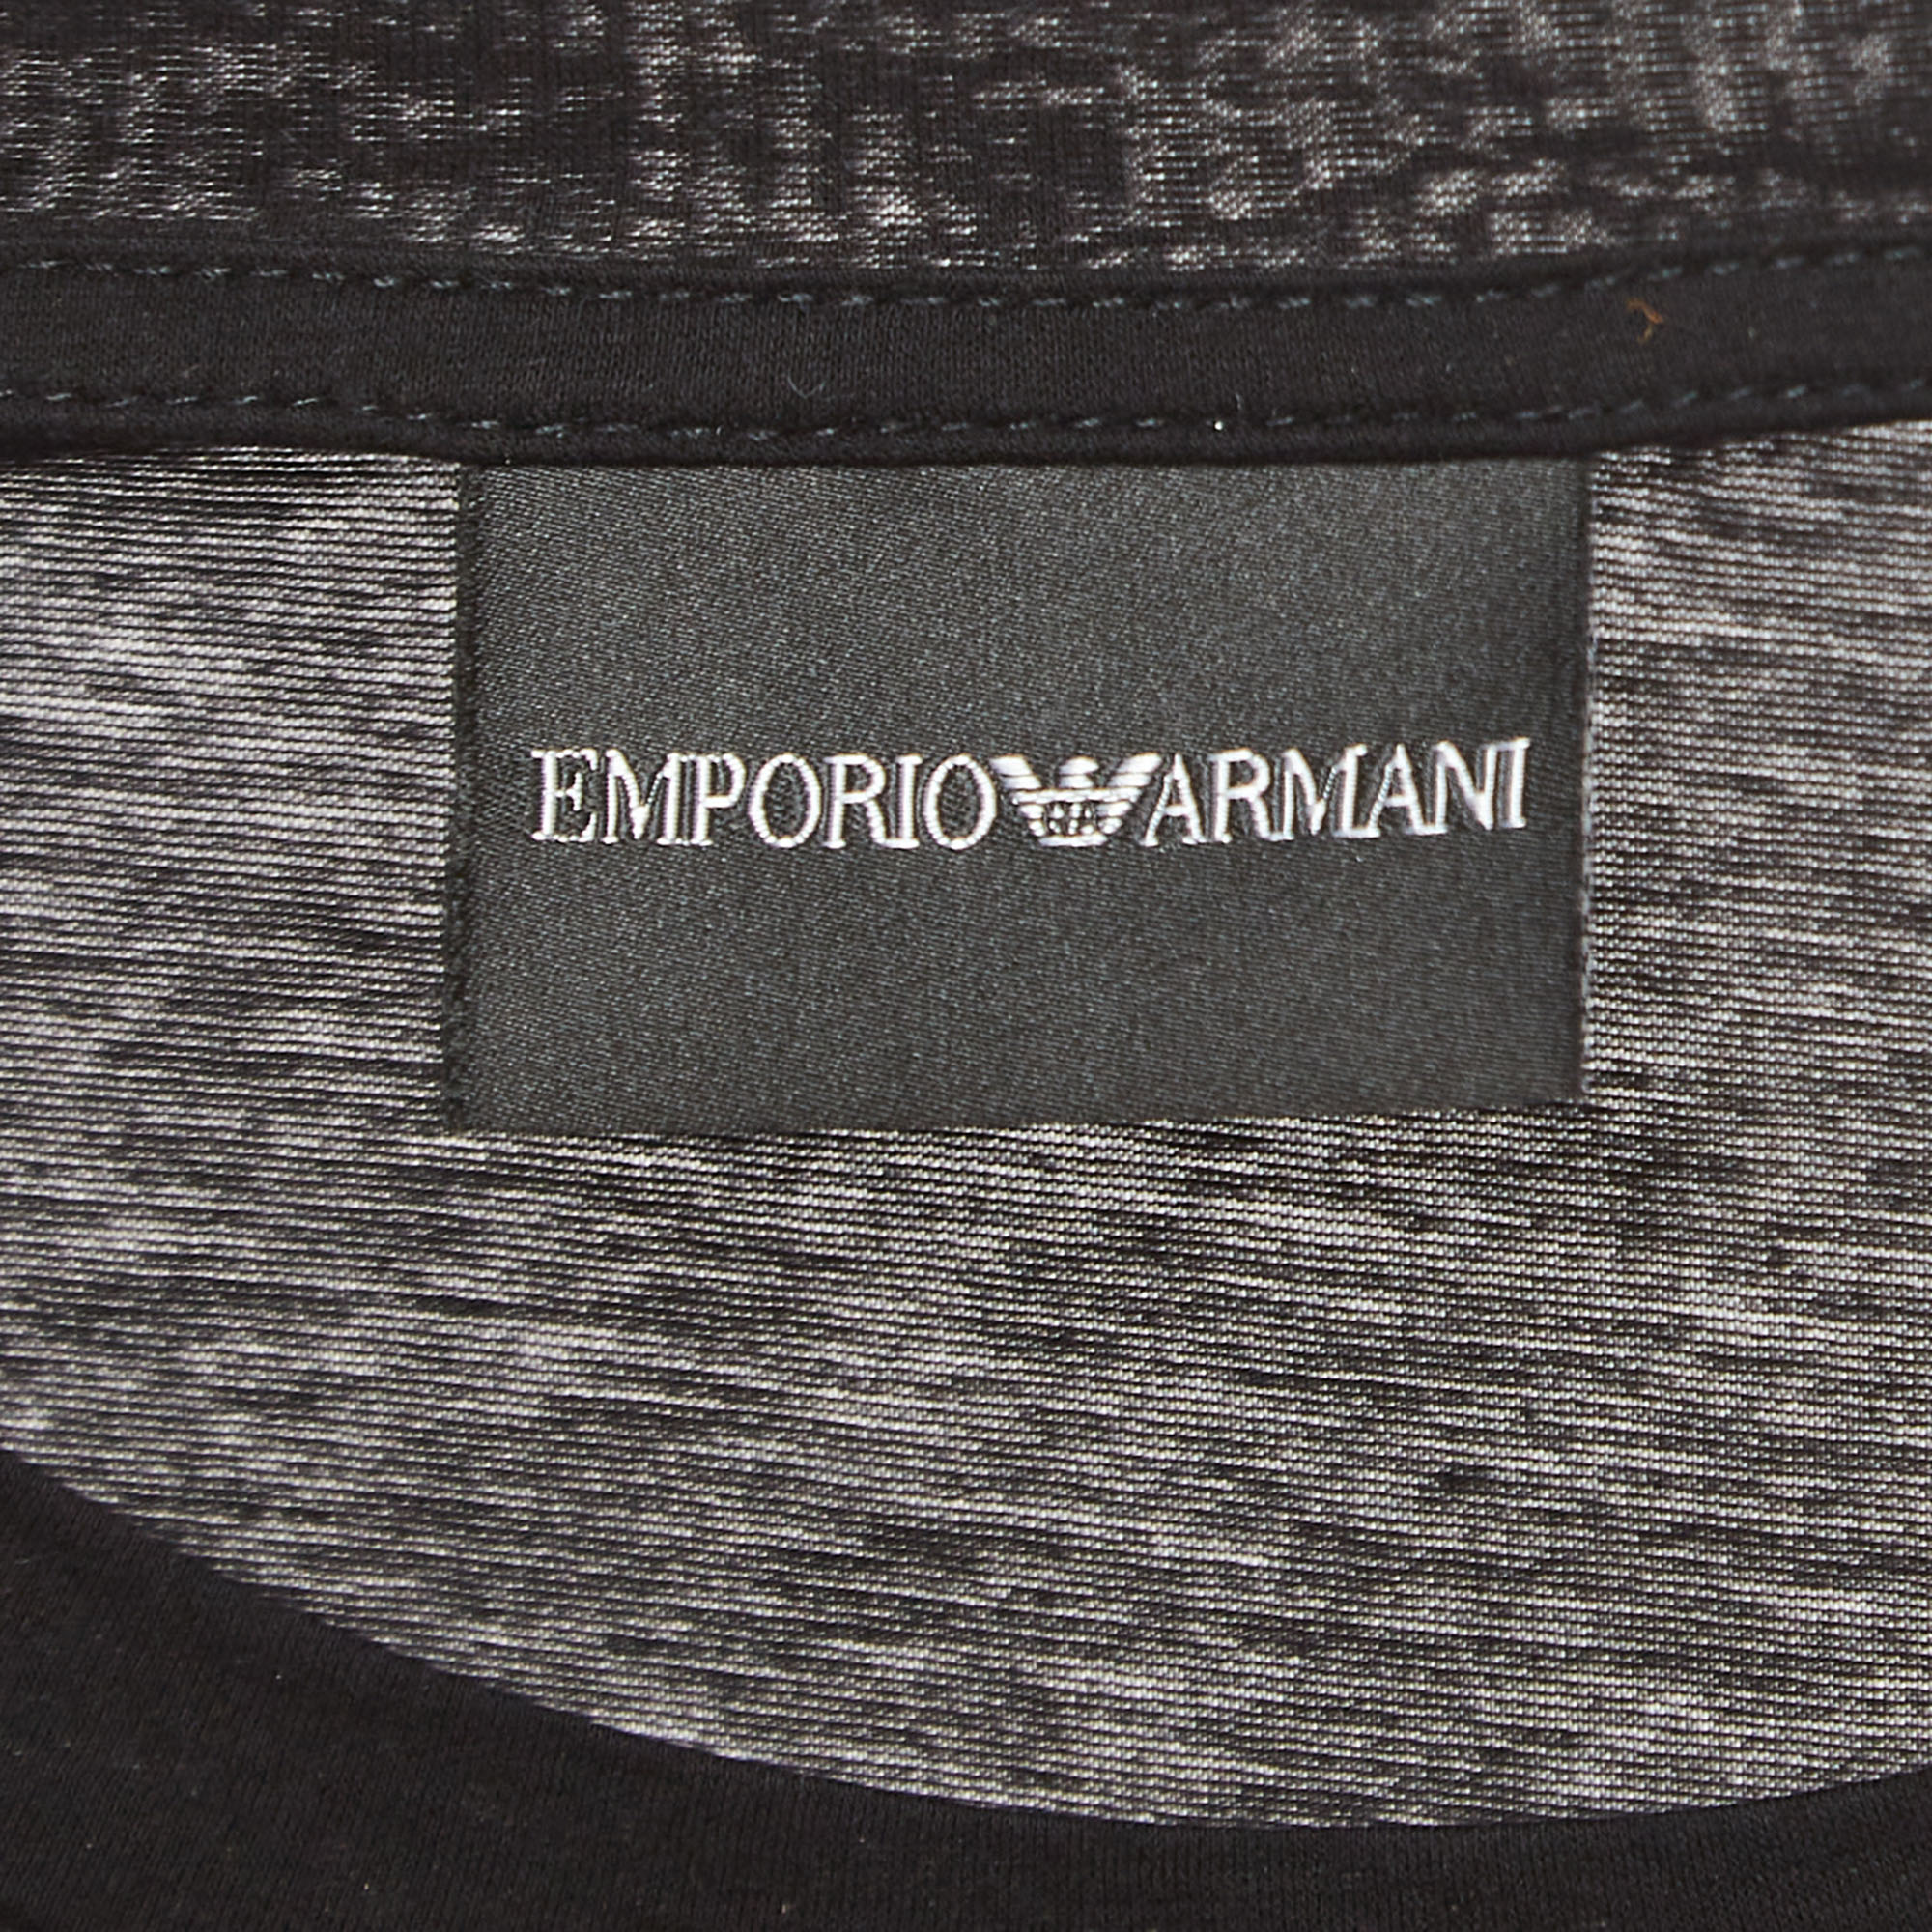 Emporio Armani Black Cotton T-Shirt L